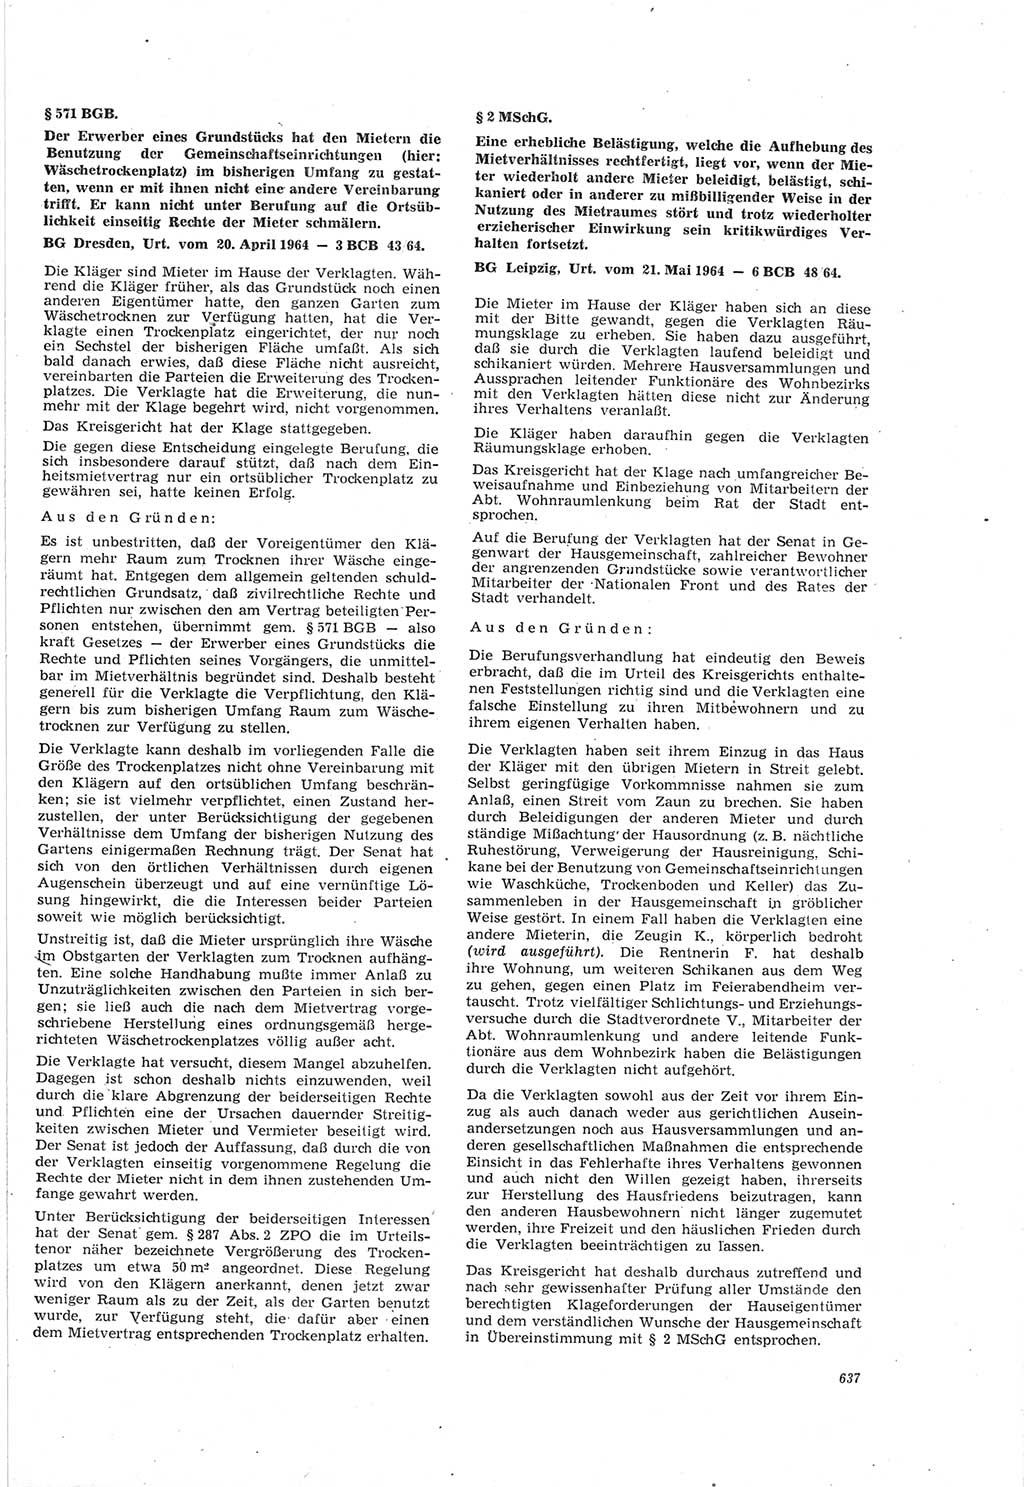 Neue Justiz (NJ), Zeitschrift für Recht und Rechtswissenschaft [Deutsche Demokratische Republik (DDR)], 18. Jahrgang 1964, Seite 637 (NJ DDR 1964, S. 637)